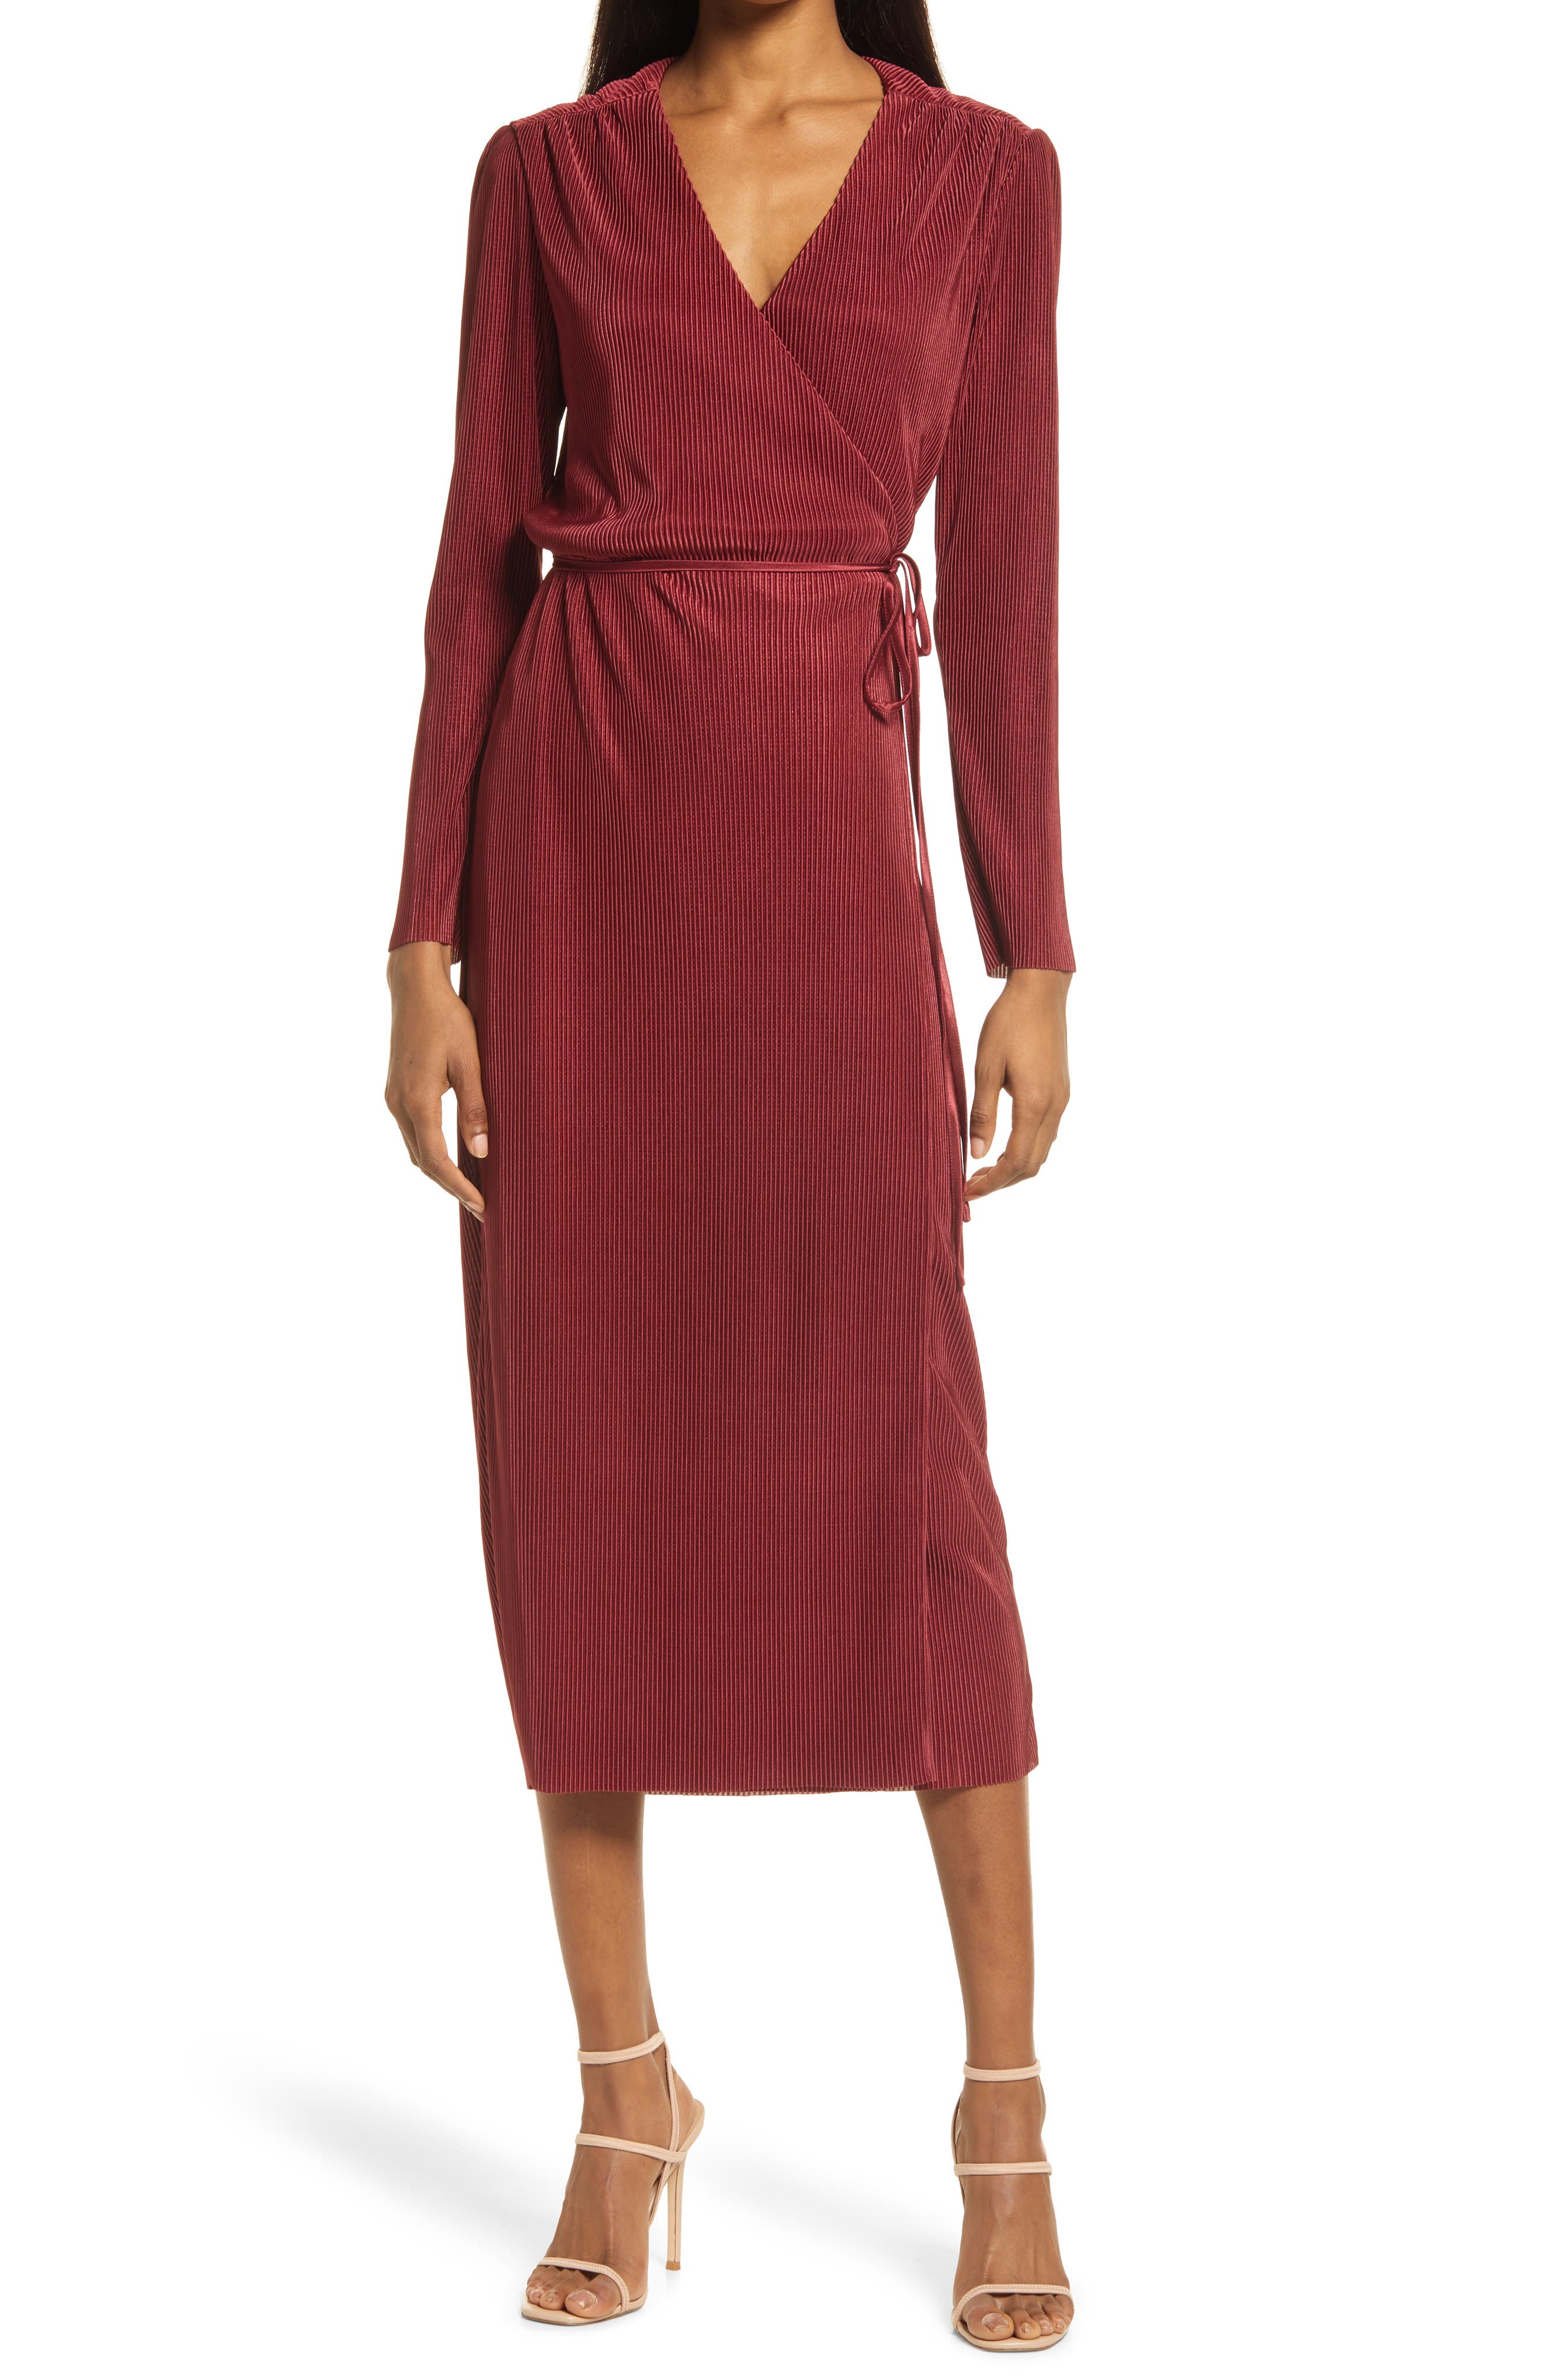 Women's Burgundy Dresses | Nordstrom